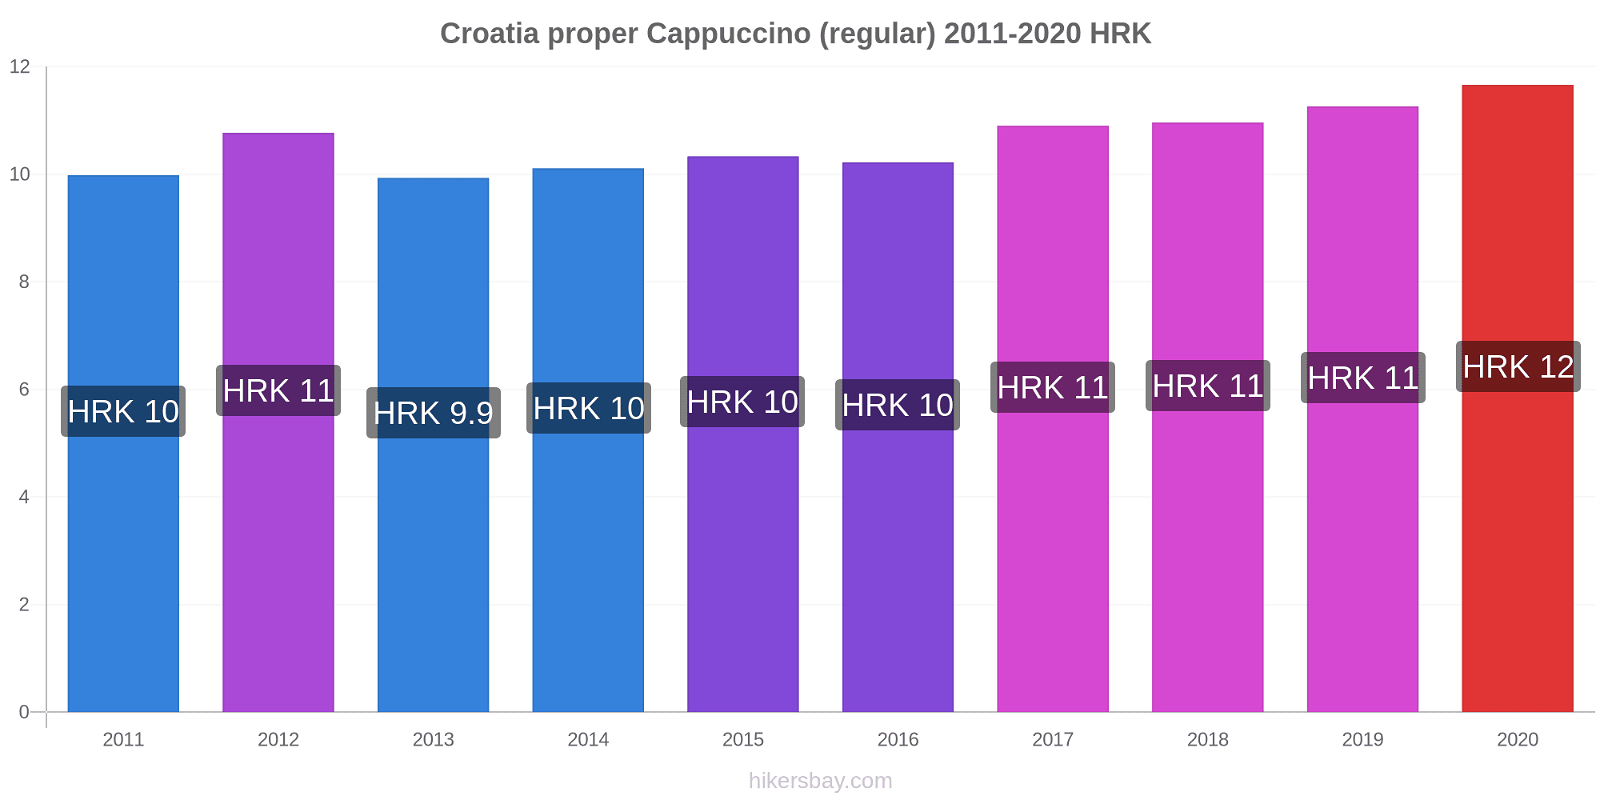 Croatia proper price changes Cappuccino (regular) hikersbay.com